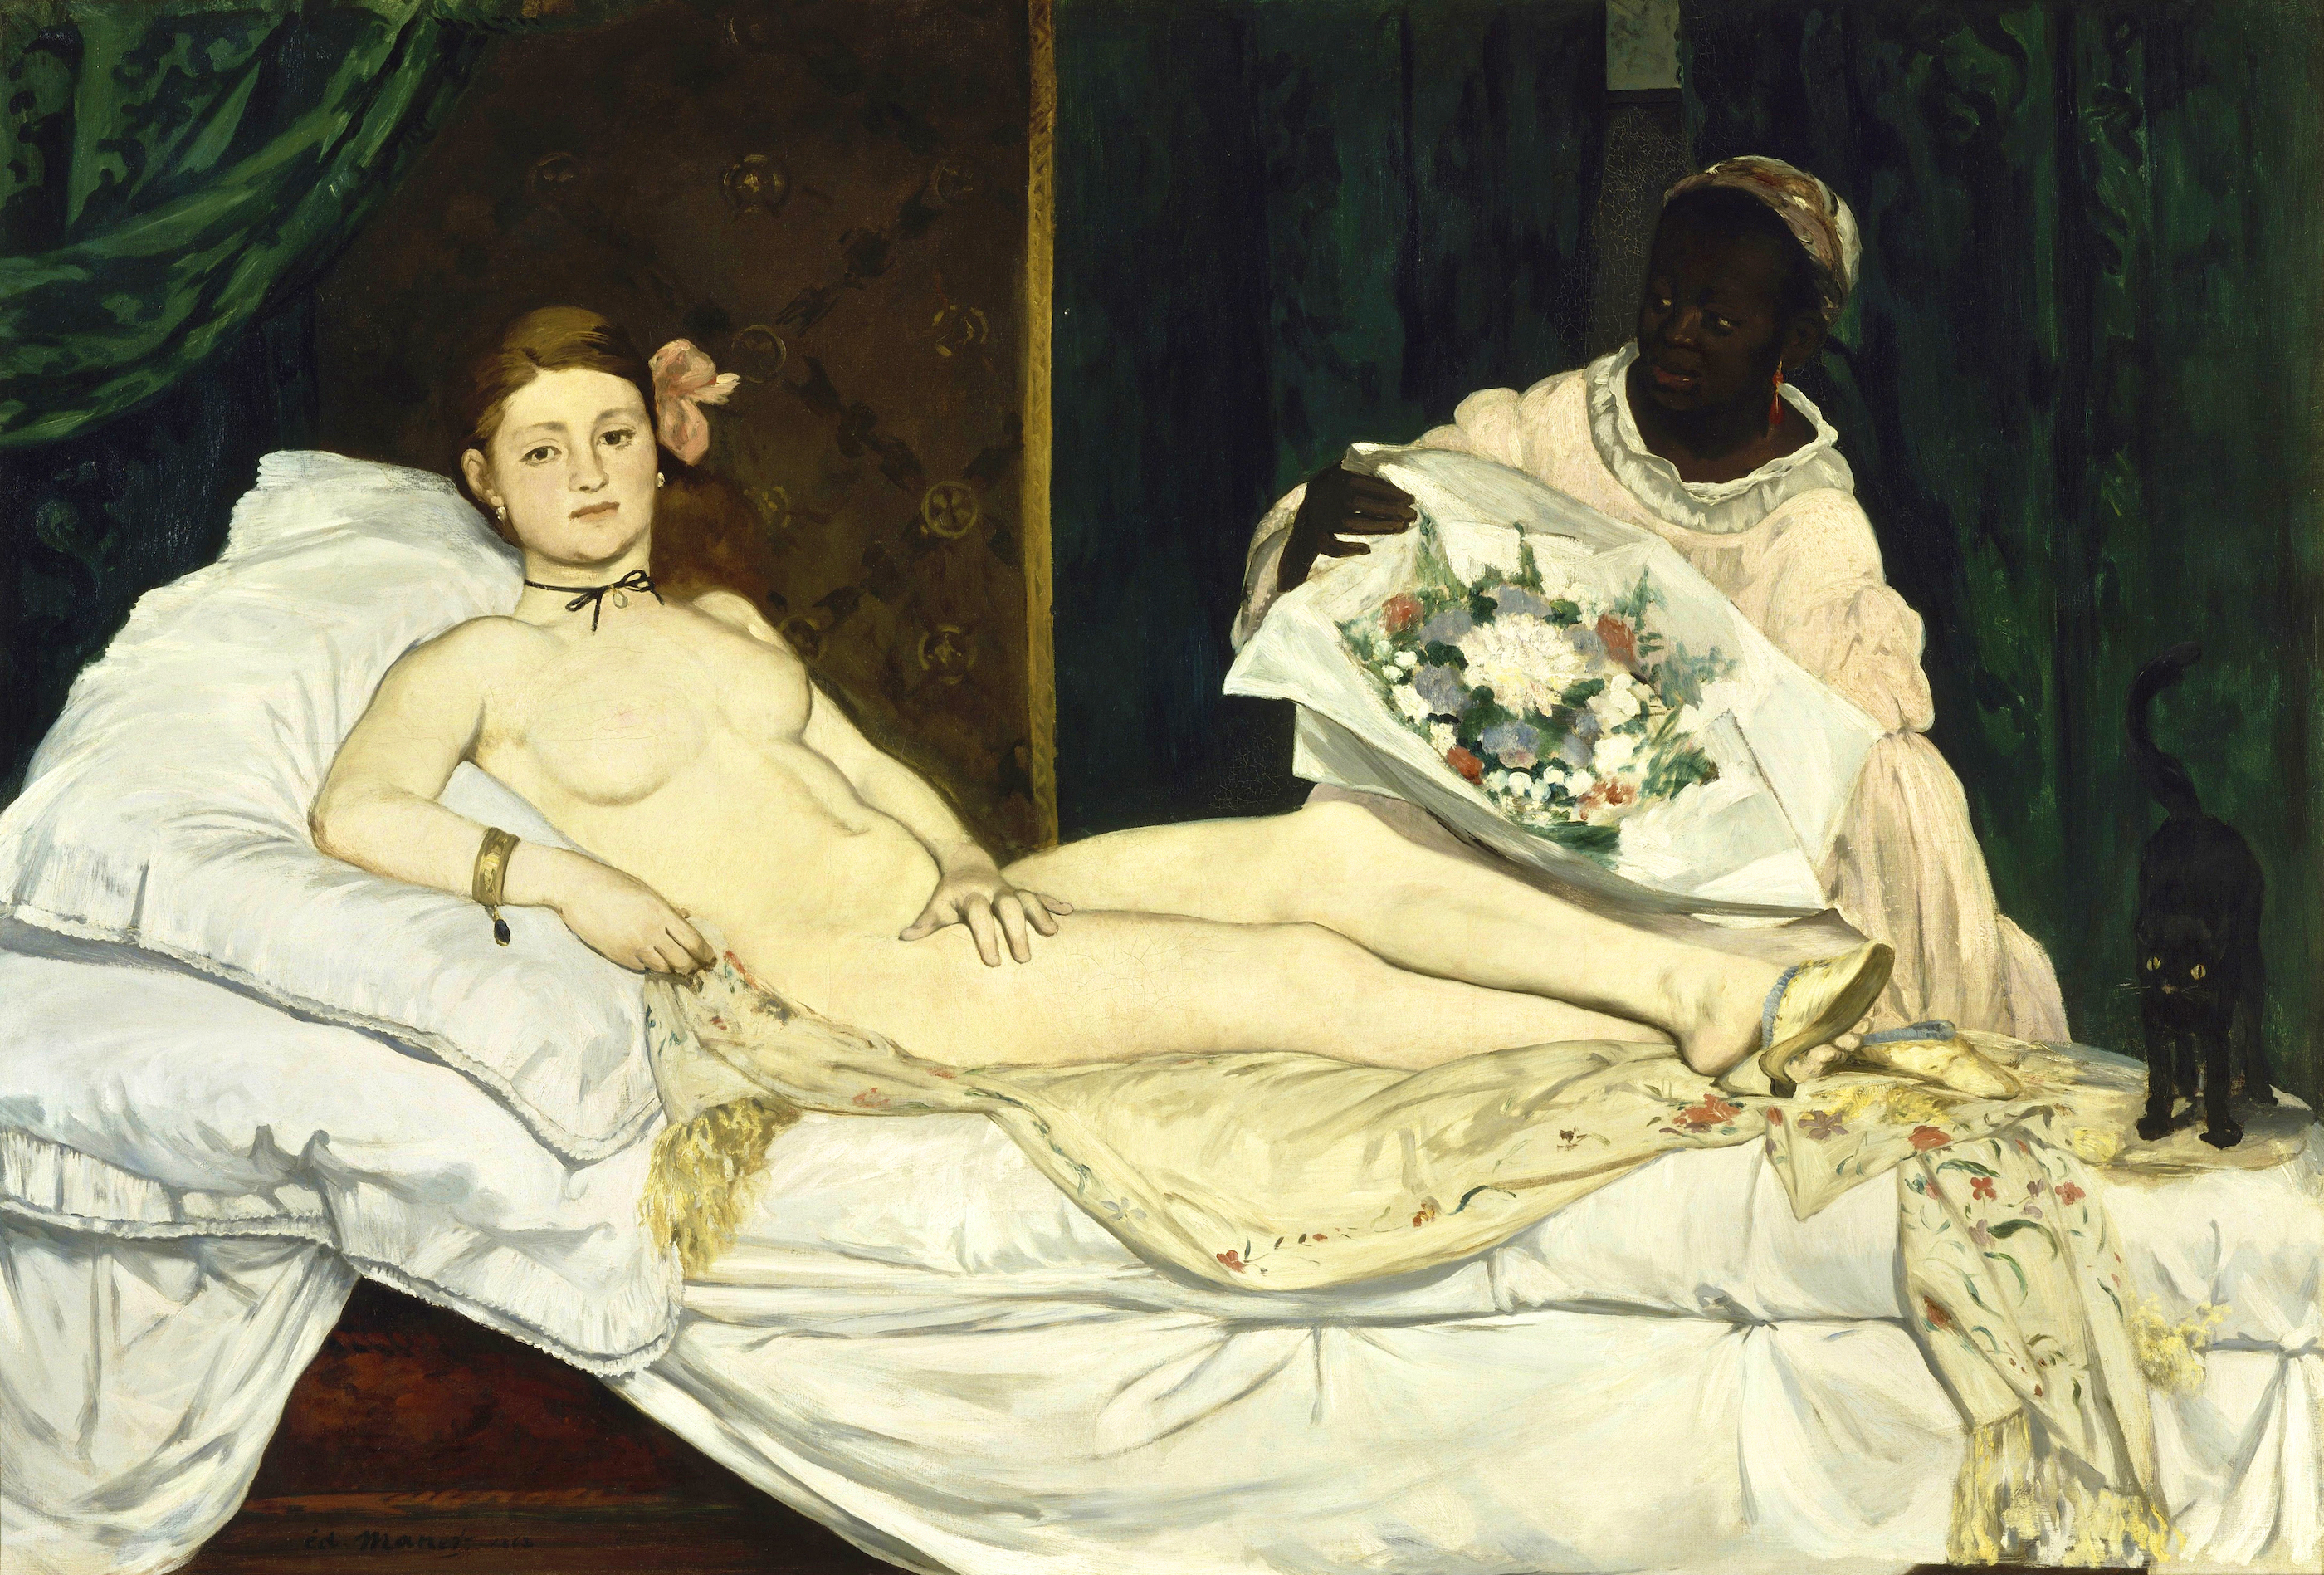 Олимпия by Édouard Manet - 1863 - 130 x 190 см 